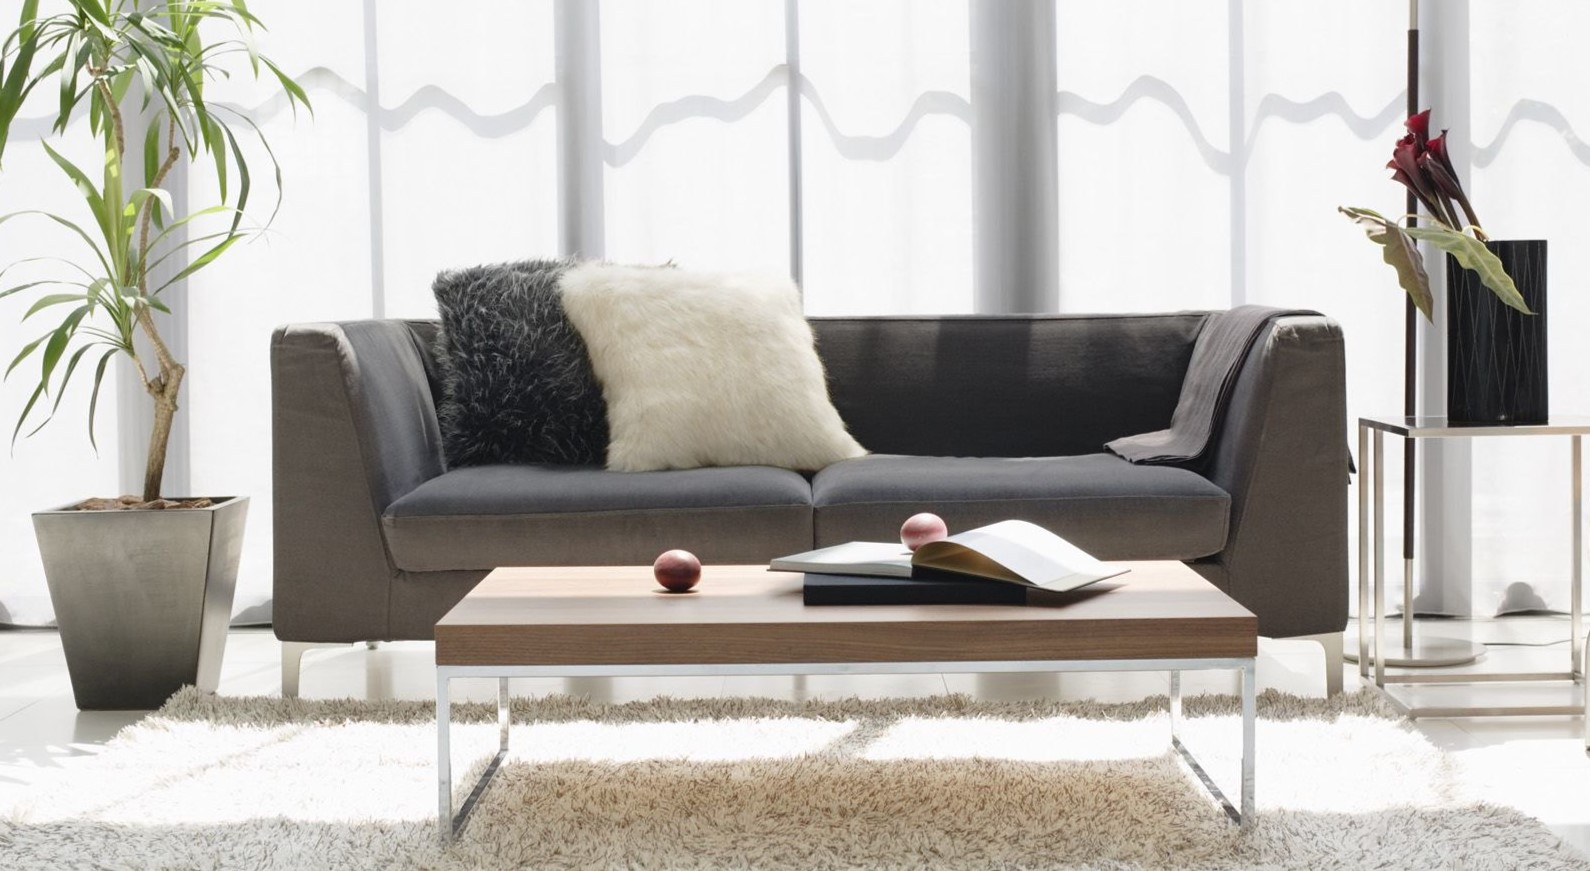 Как выбрать модный и стильный диван: советы дизайнеров